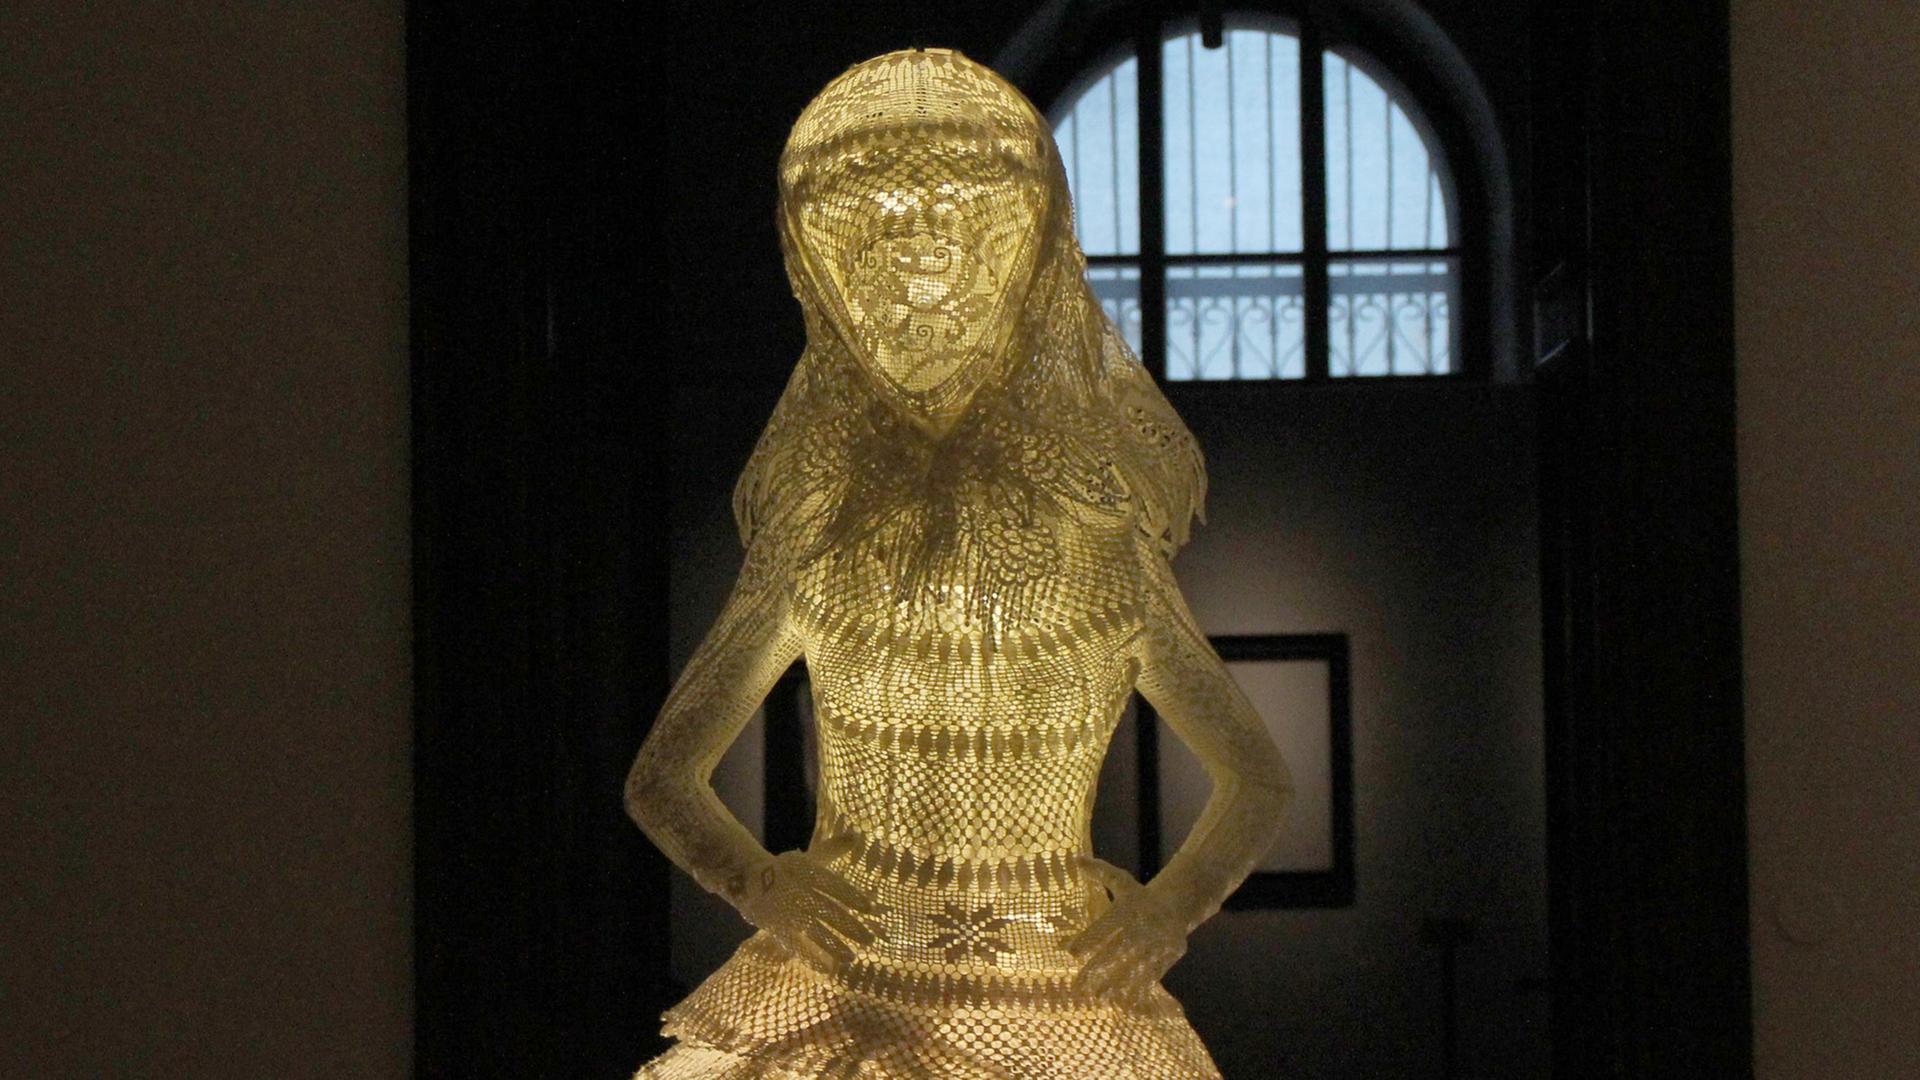 Eine Puppe mit Kleid und Kopftuch steht in der Ausstellung "Verhüllt, enthüllt! Das Kopftuch" zur Kulturgeschichte des Kopftuchs im Weltmuseum Wien.